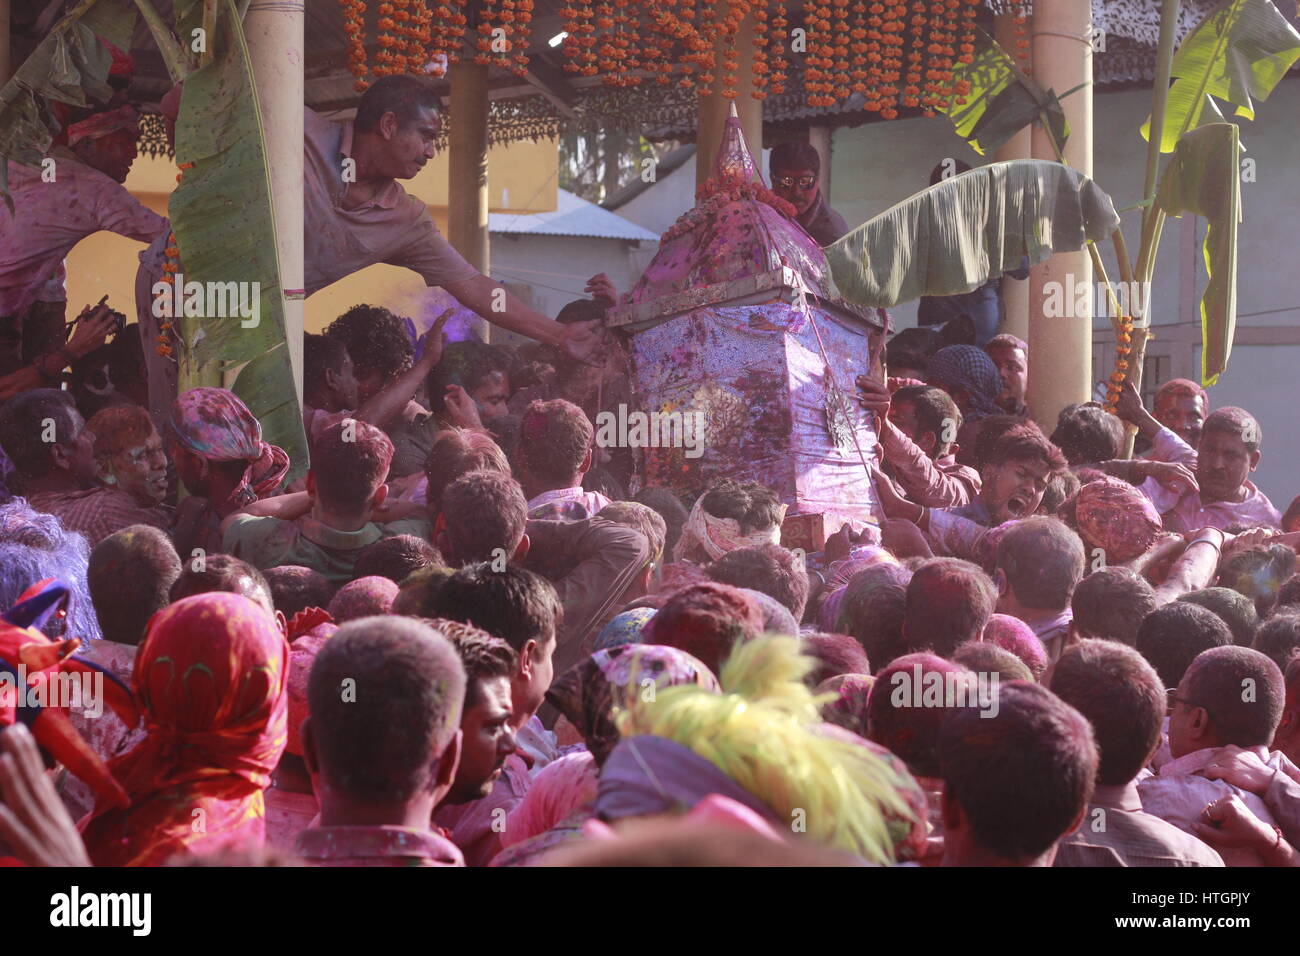 Barpeta, Assam, Inde. 14 mars 2017,. Chaque année, pendant le festival de Holi est célébré dans Barpeta Satra comme Doul Utsava (Holi Festival) où des milliers de dévots se rassemble pour assister et participer à cet événement.Le peuple de Barpeta gratuites phakuguri avec joie. Aute festival est un célèbre festival de l'Inde. L'écart du reste du pays c'est aussi une fête colorée par le peuple de l'Assam, il est spécialement la formidable occasion pour la population de Barpeta. Photo de David Talukdar / Alamy Live News Banque D'Images